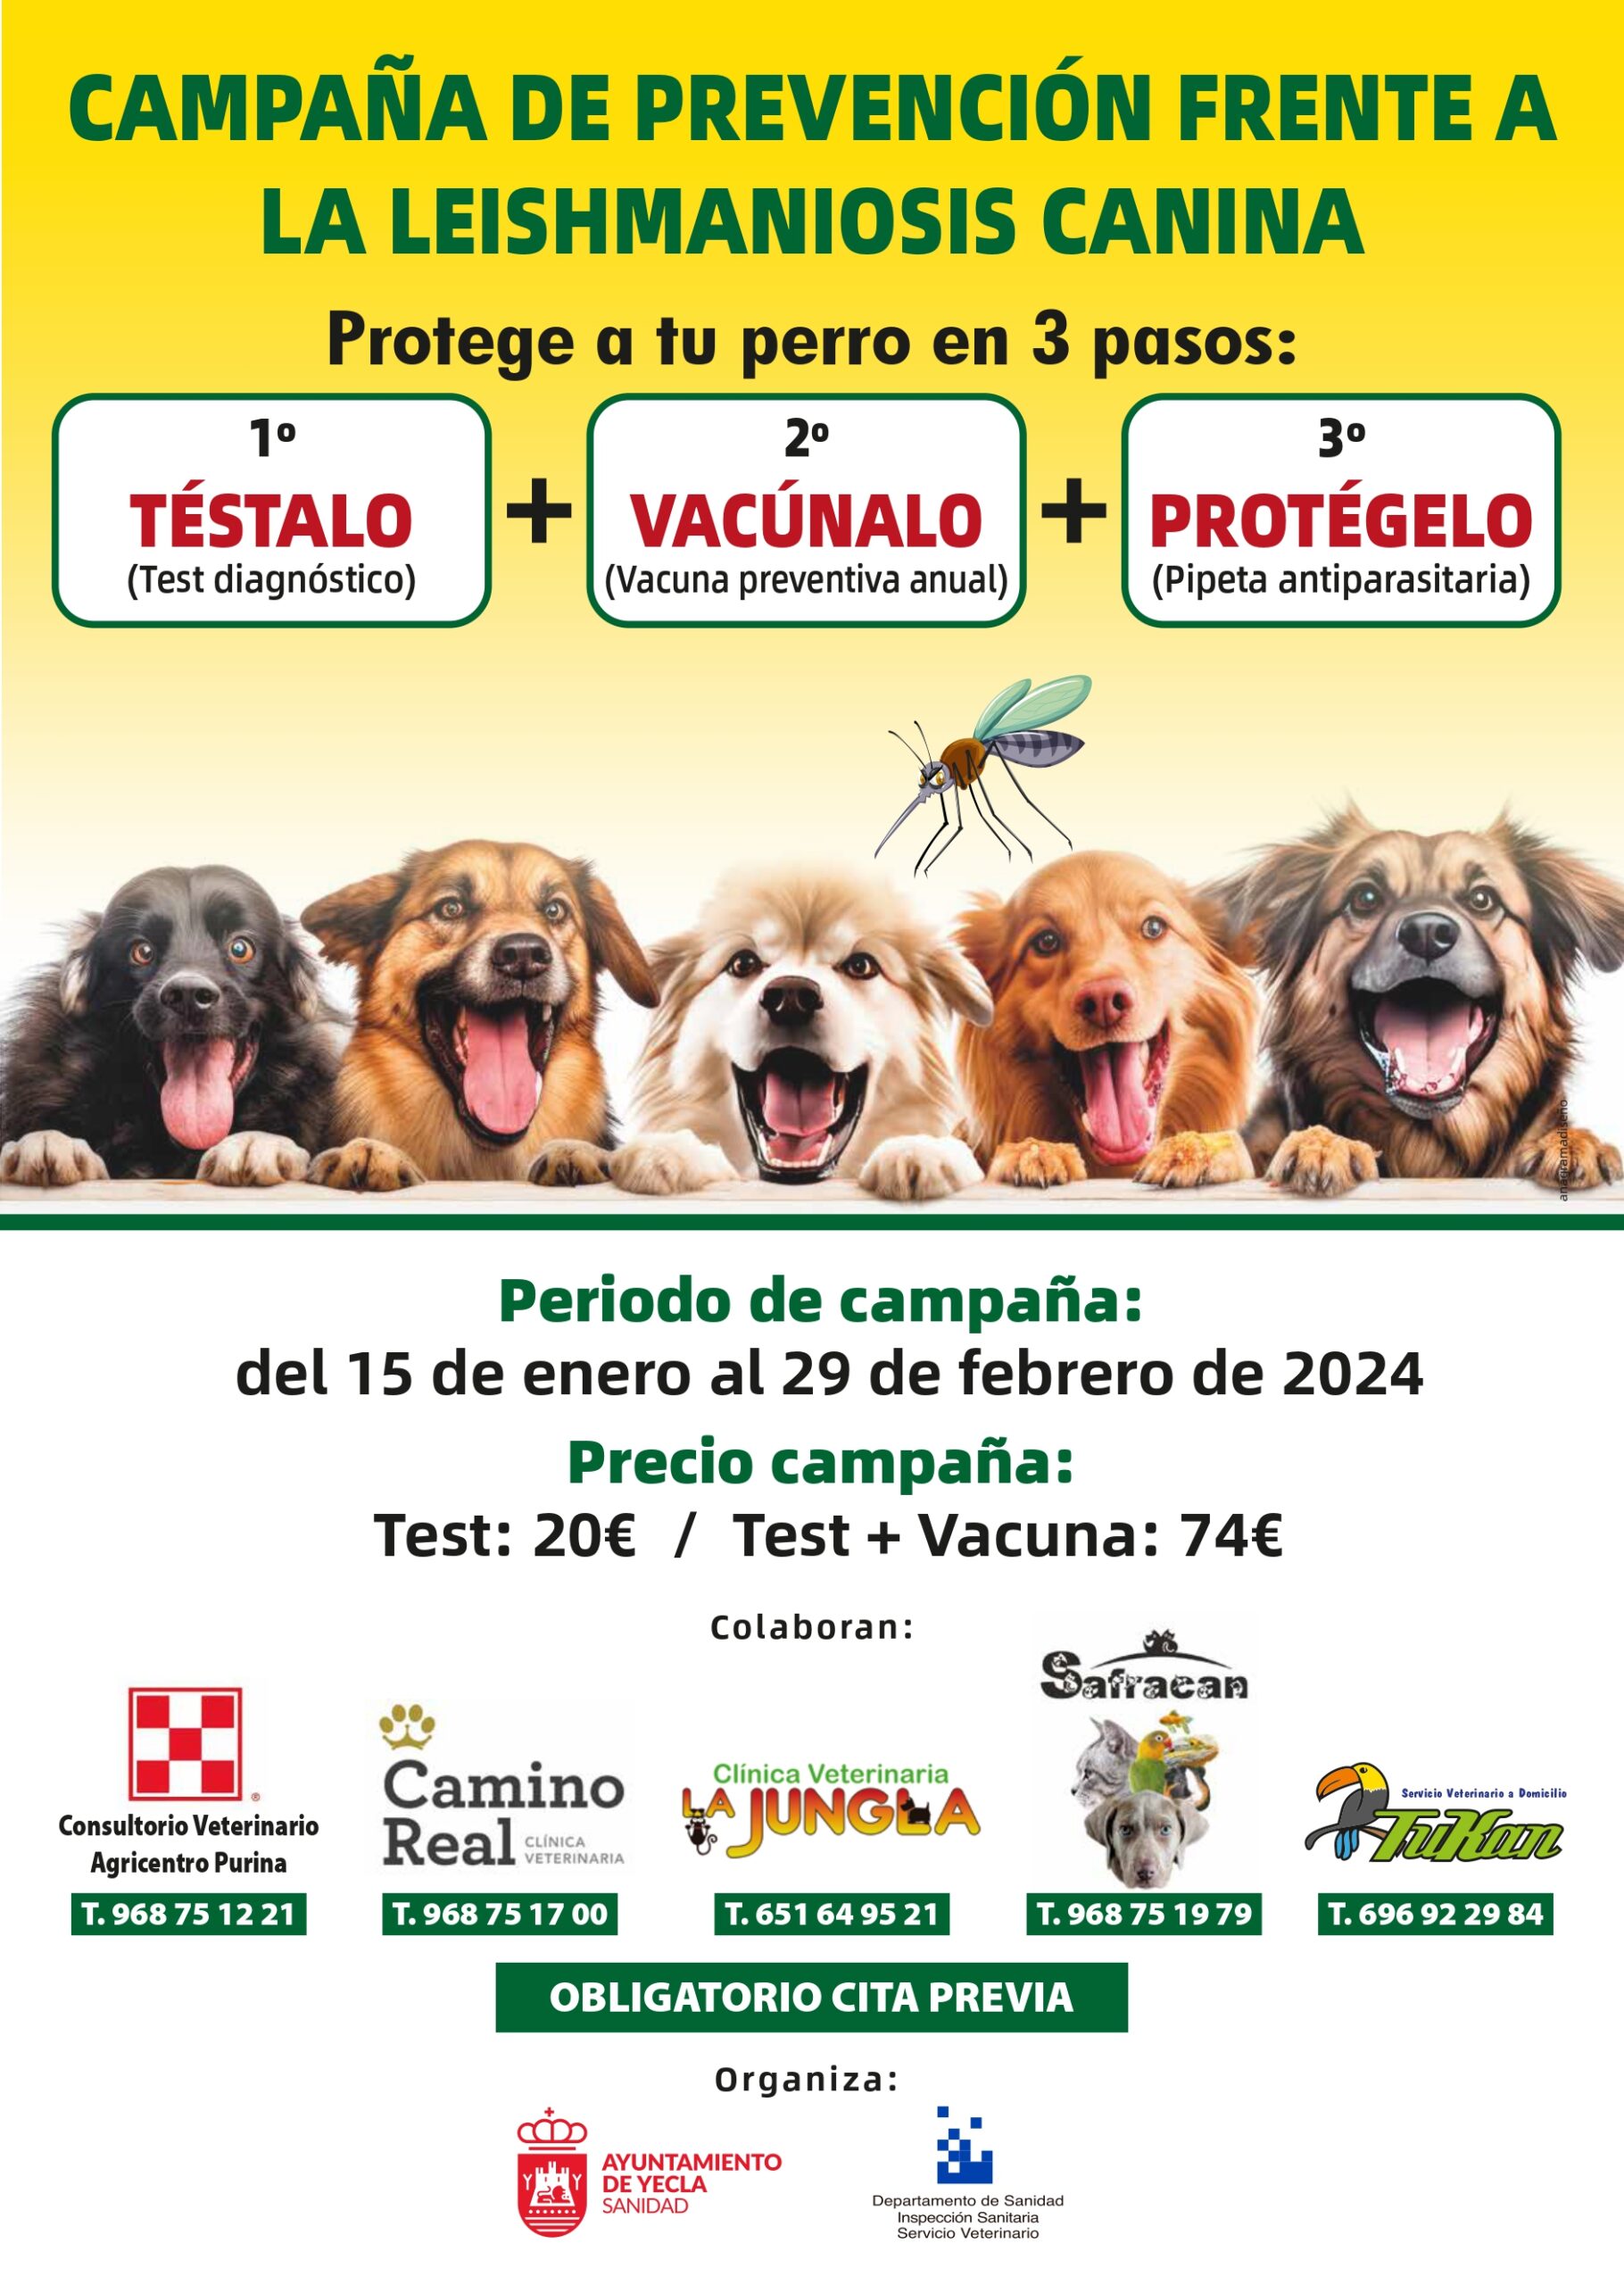 Protege a tu perro contra la leishmaniosis canina. La campaña se extiende hasta el 29 de febrero.